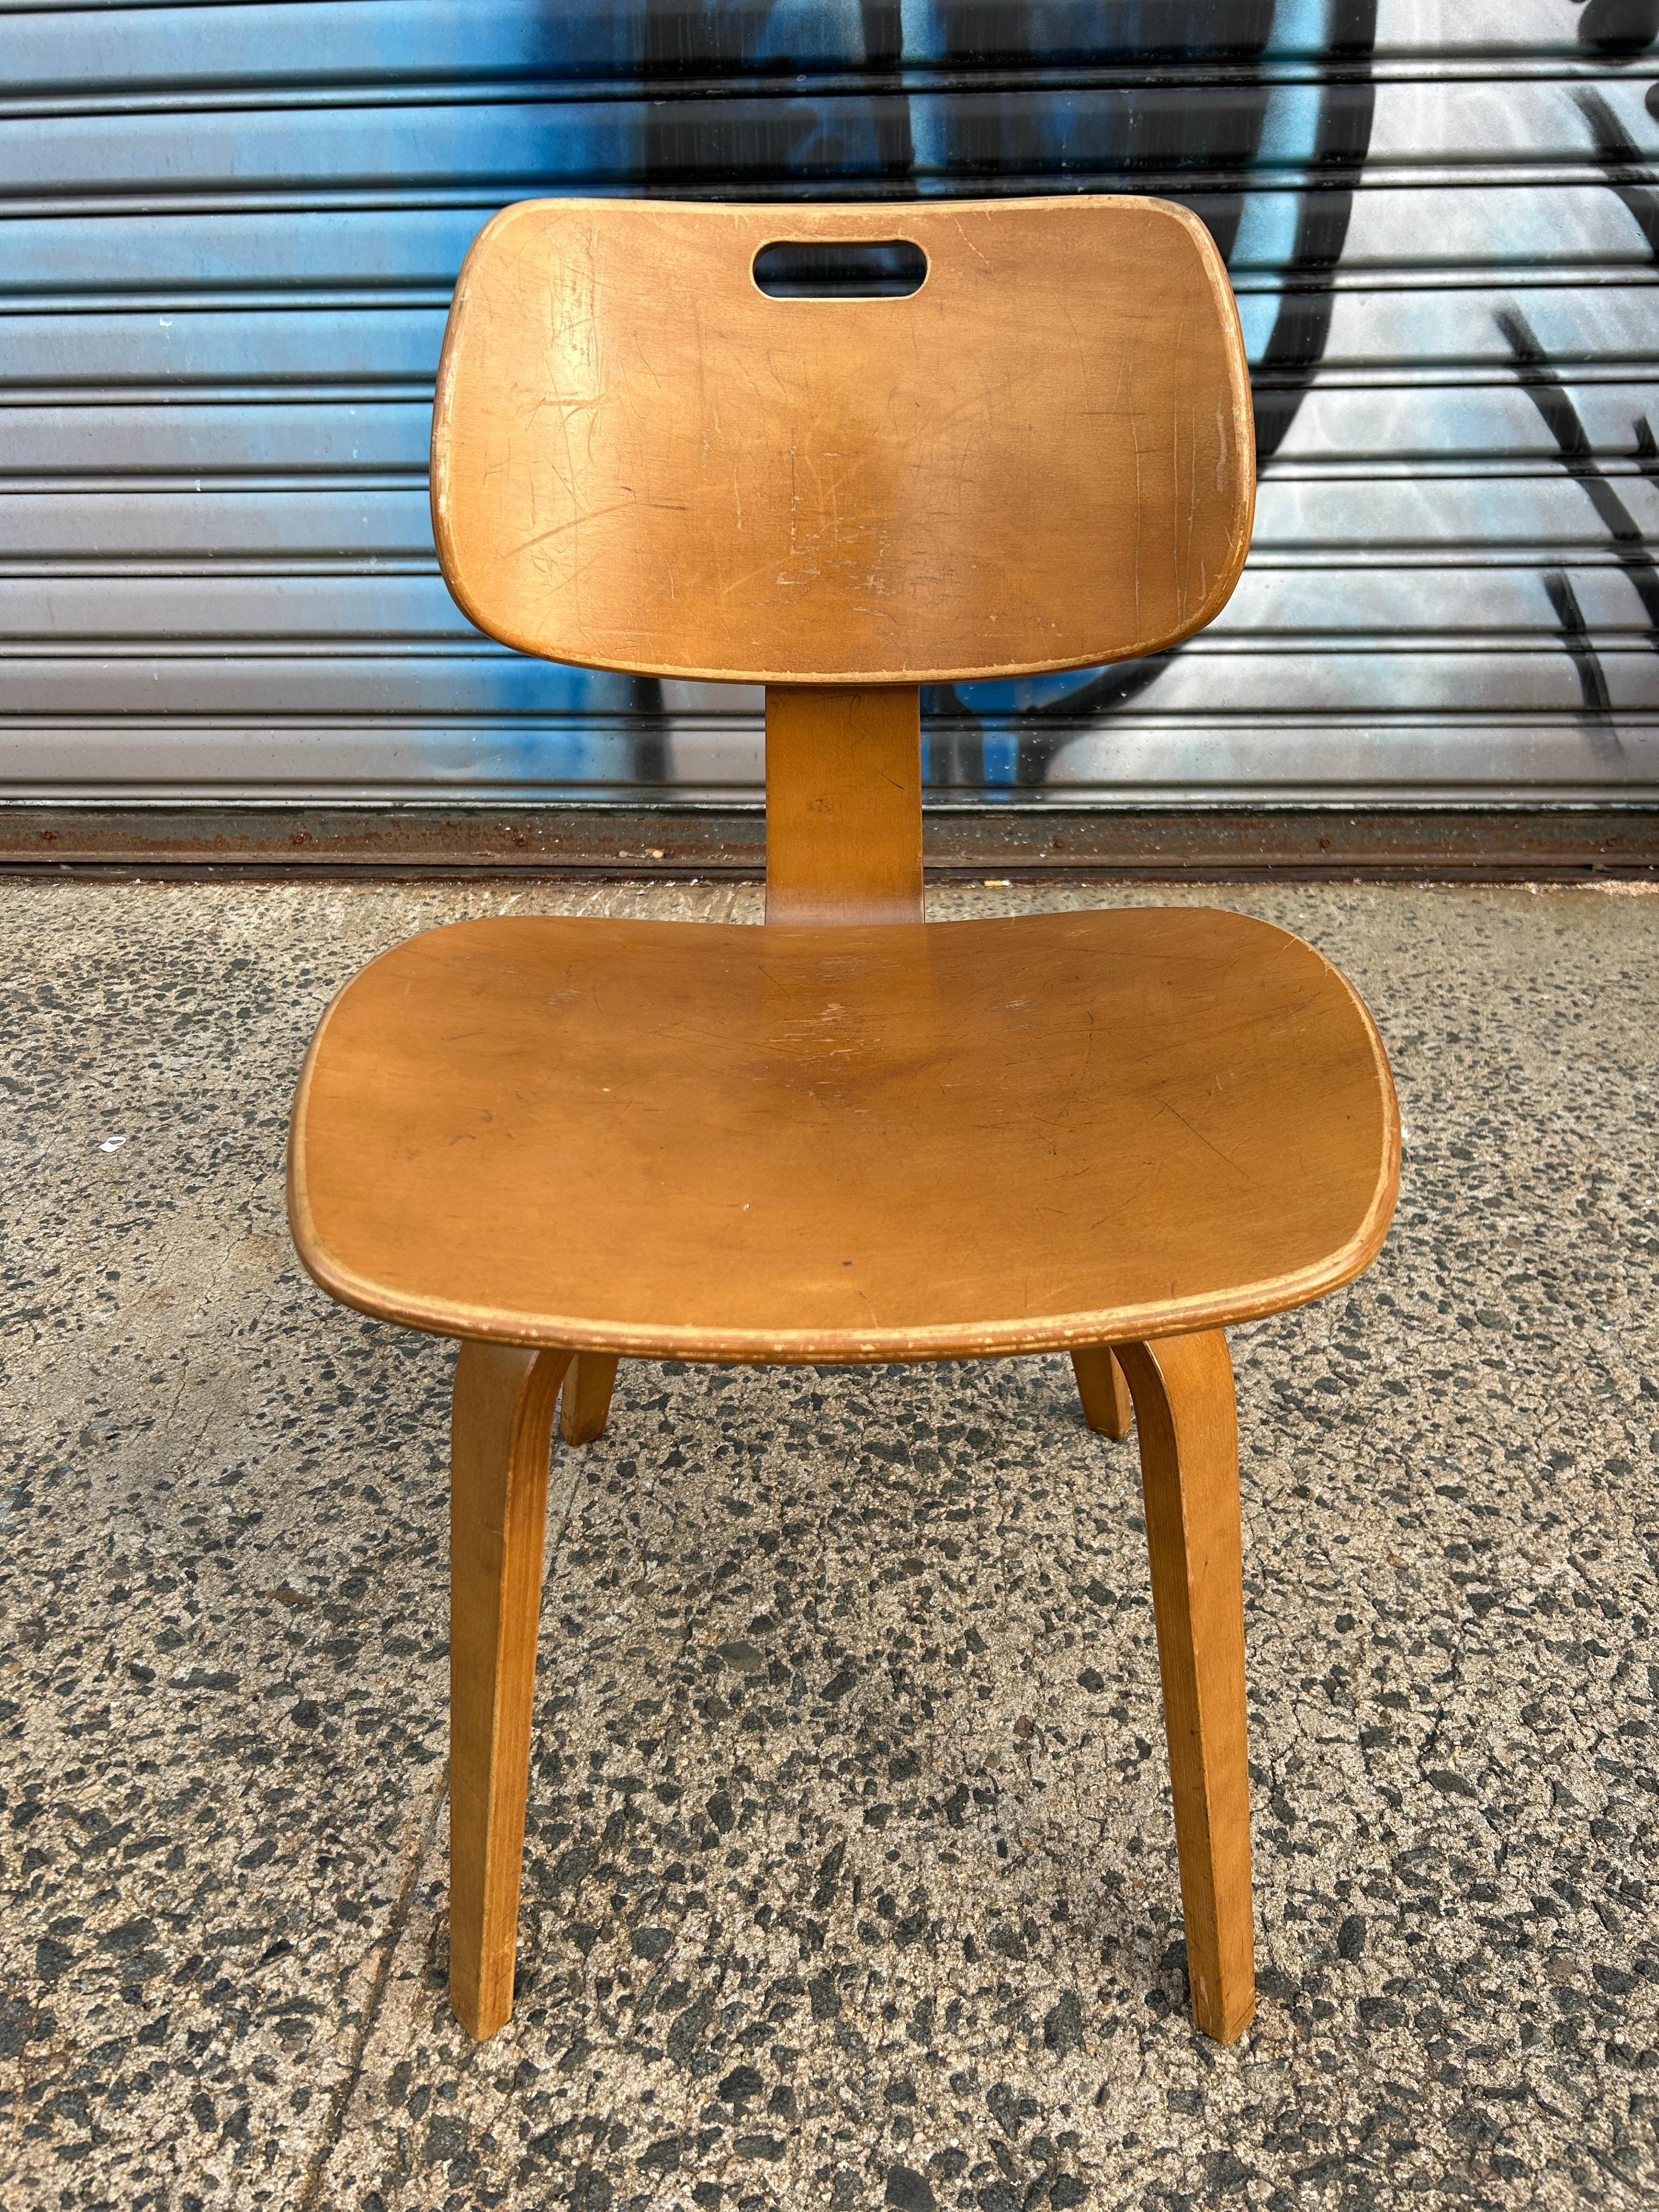 (1) Mid-Century Modern Thonet Bugholz Birke Esszimmer Stuhl mit Griff. Mit originalem Label. Gute Vintage Zustand Stühle zeigen Gebrauchsspuren, aber sonst sehr solide und Original. Zeitloses Stuhldesign von Thonet. Geschwungene Beine aus